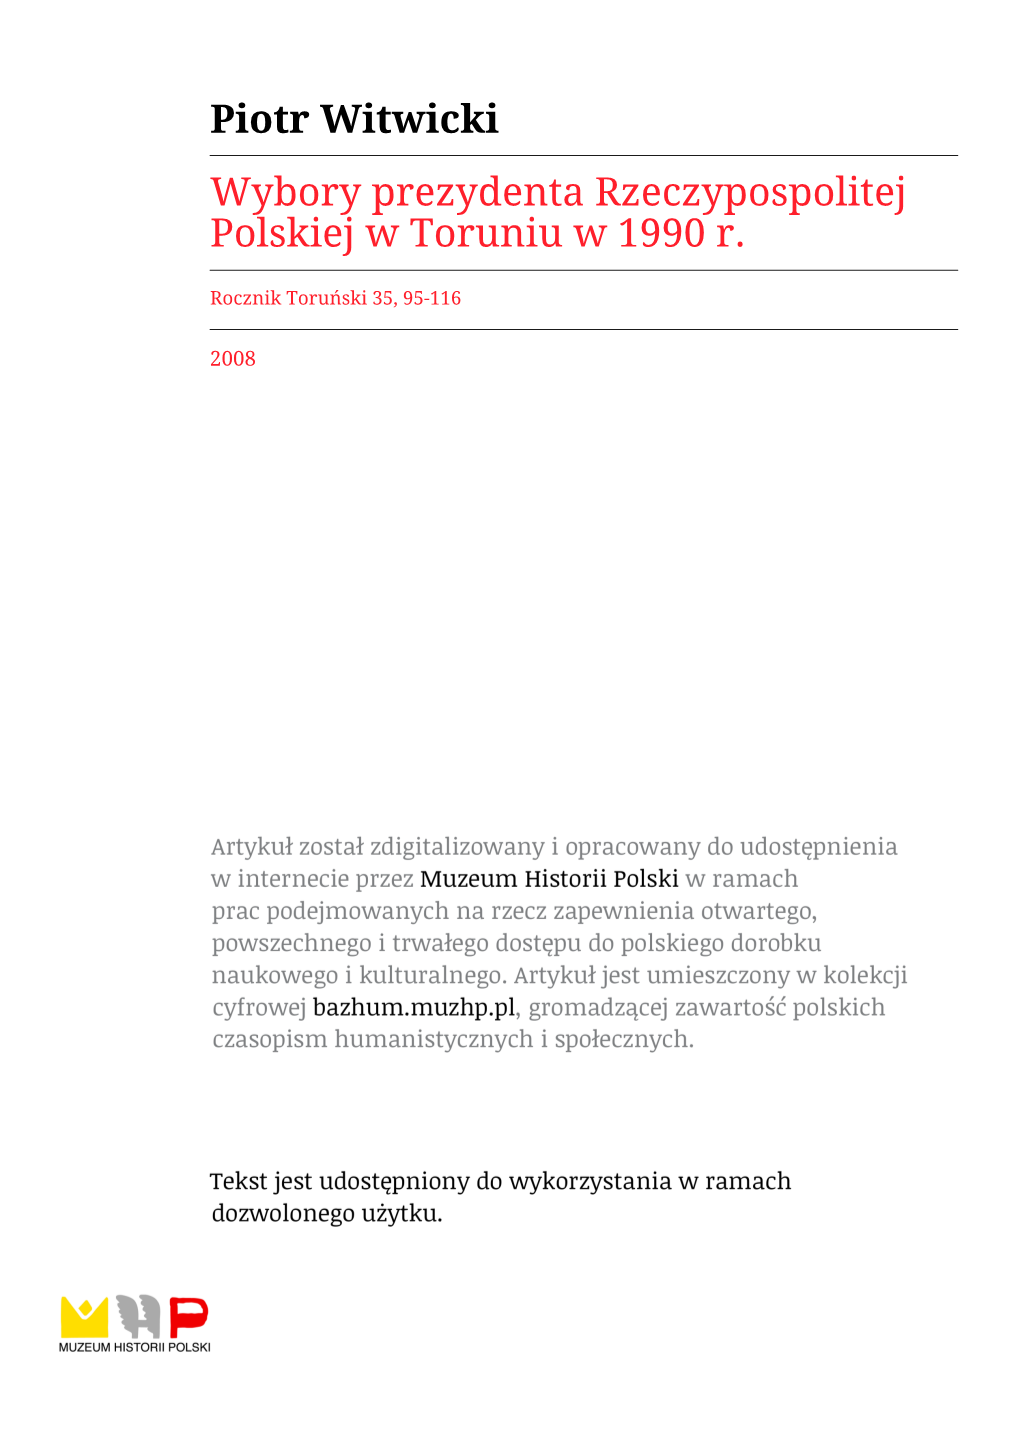 Wybory Prezydenta Rzeczypospolitej Polskiej W Toruniu W 1990 R